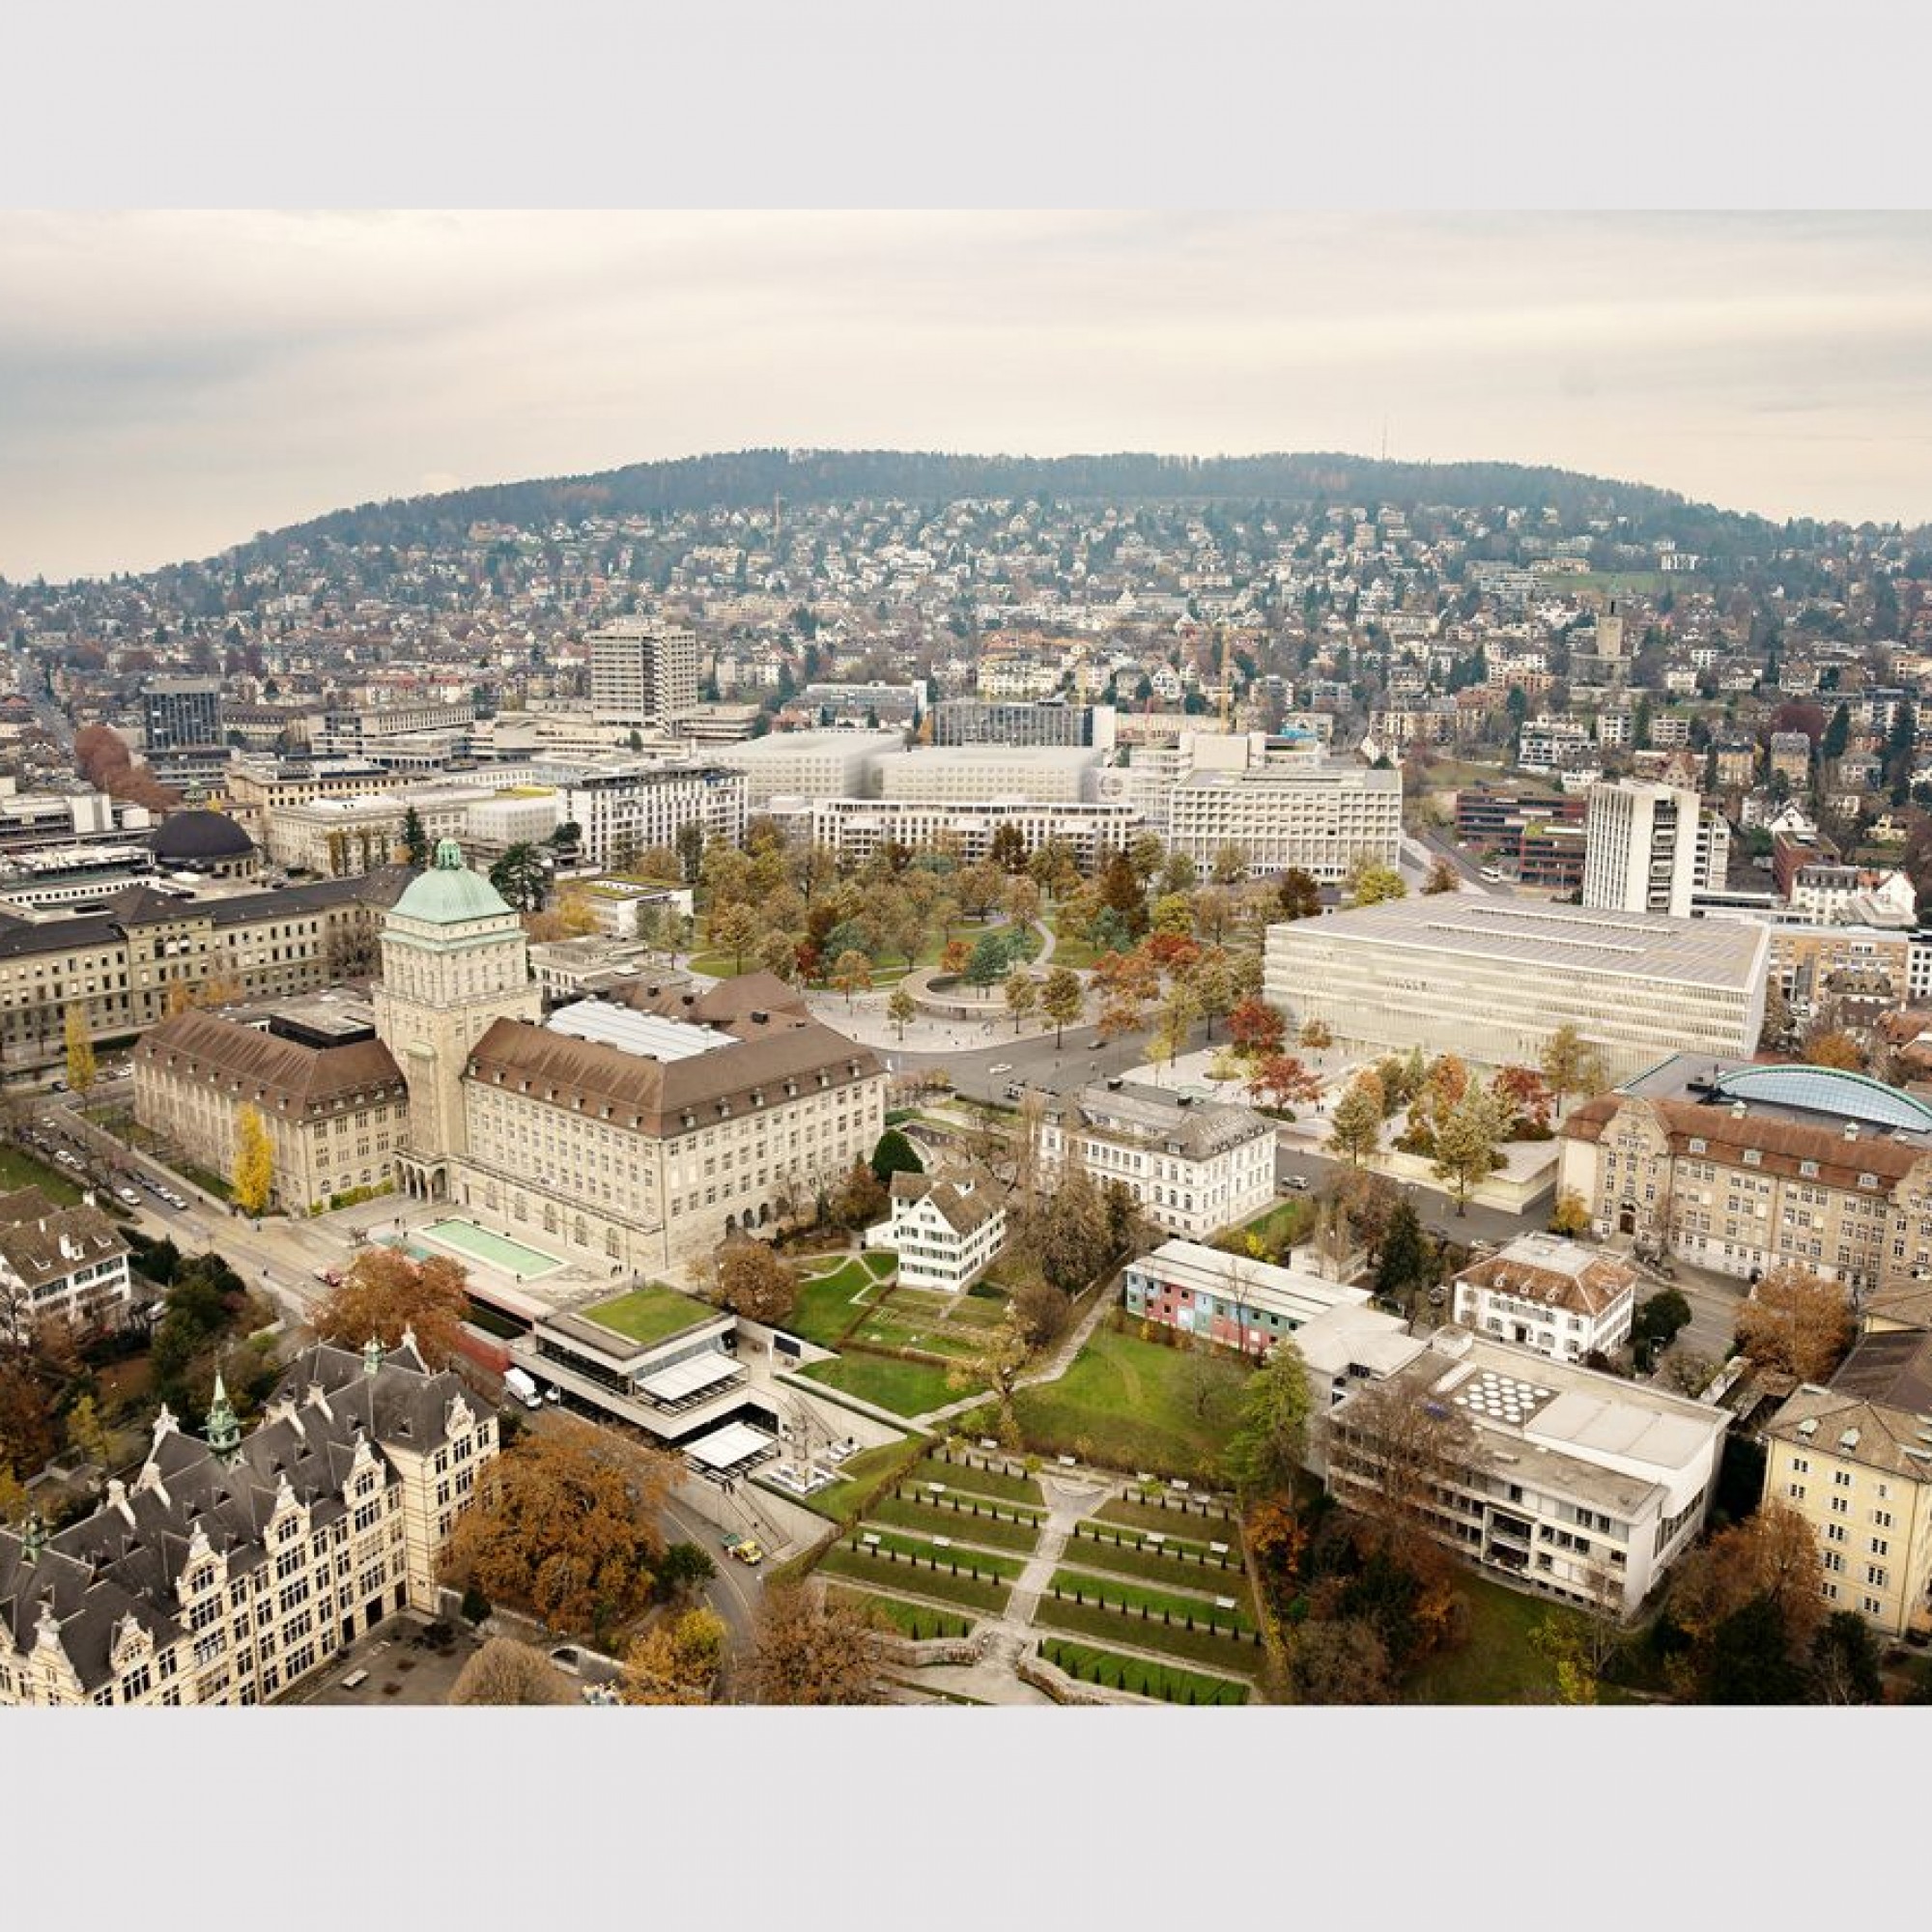 Blick auf das künftige Hochschulgebiet im Zentrum der Stadt Zürich.